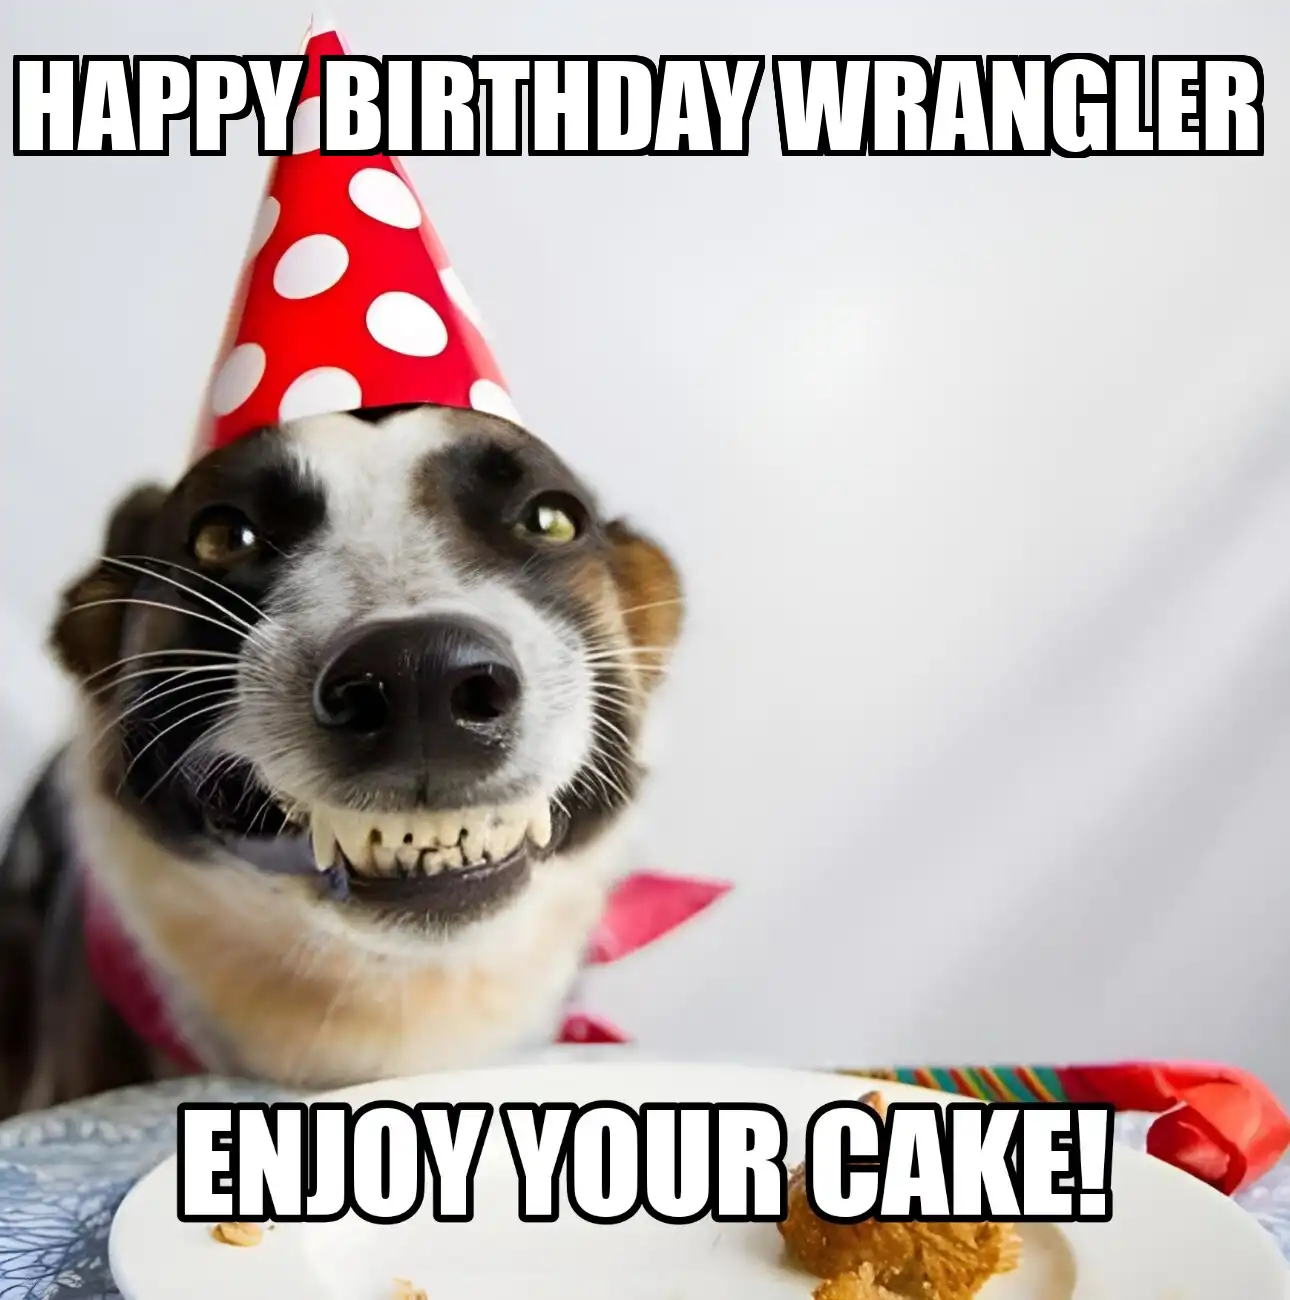 Happy Birthday Wrangler Enjoy Your Cake Dog Meme